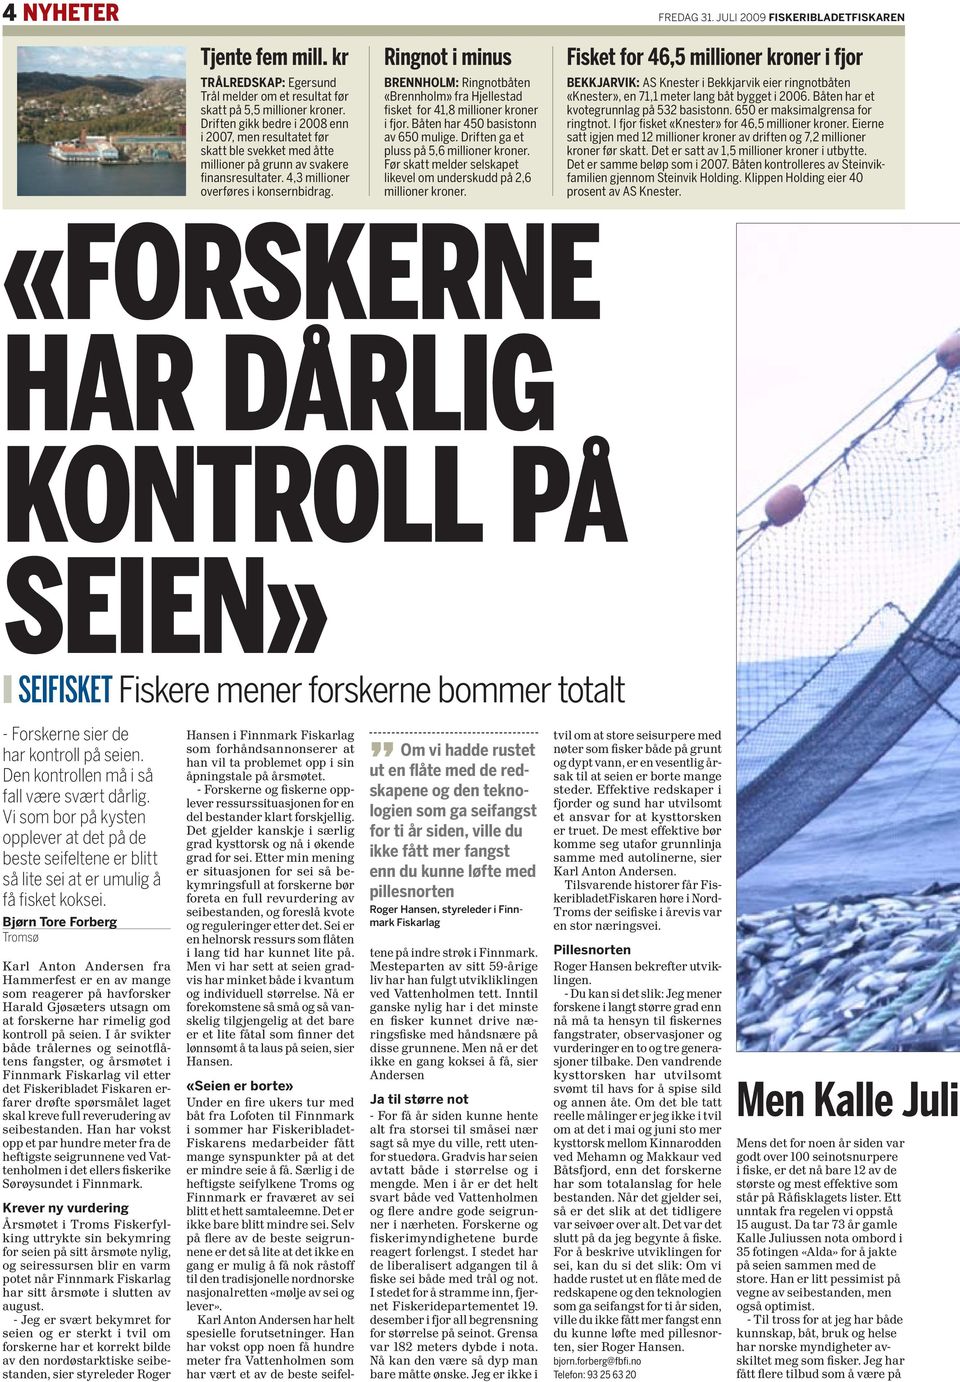 Ringnot i minus brennholm: Ringnotbåten «Brennholm» fra Hjellestad fisket for 41,8 millioner kroner i fjor. Båten har 450 basistonn av 650 mulige. Driften ga et pluss på 5,6 millioner kroner.